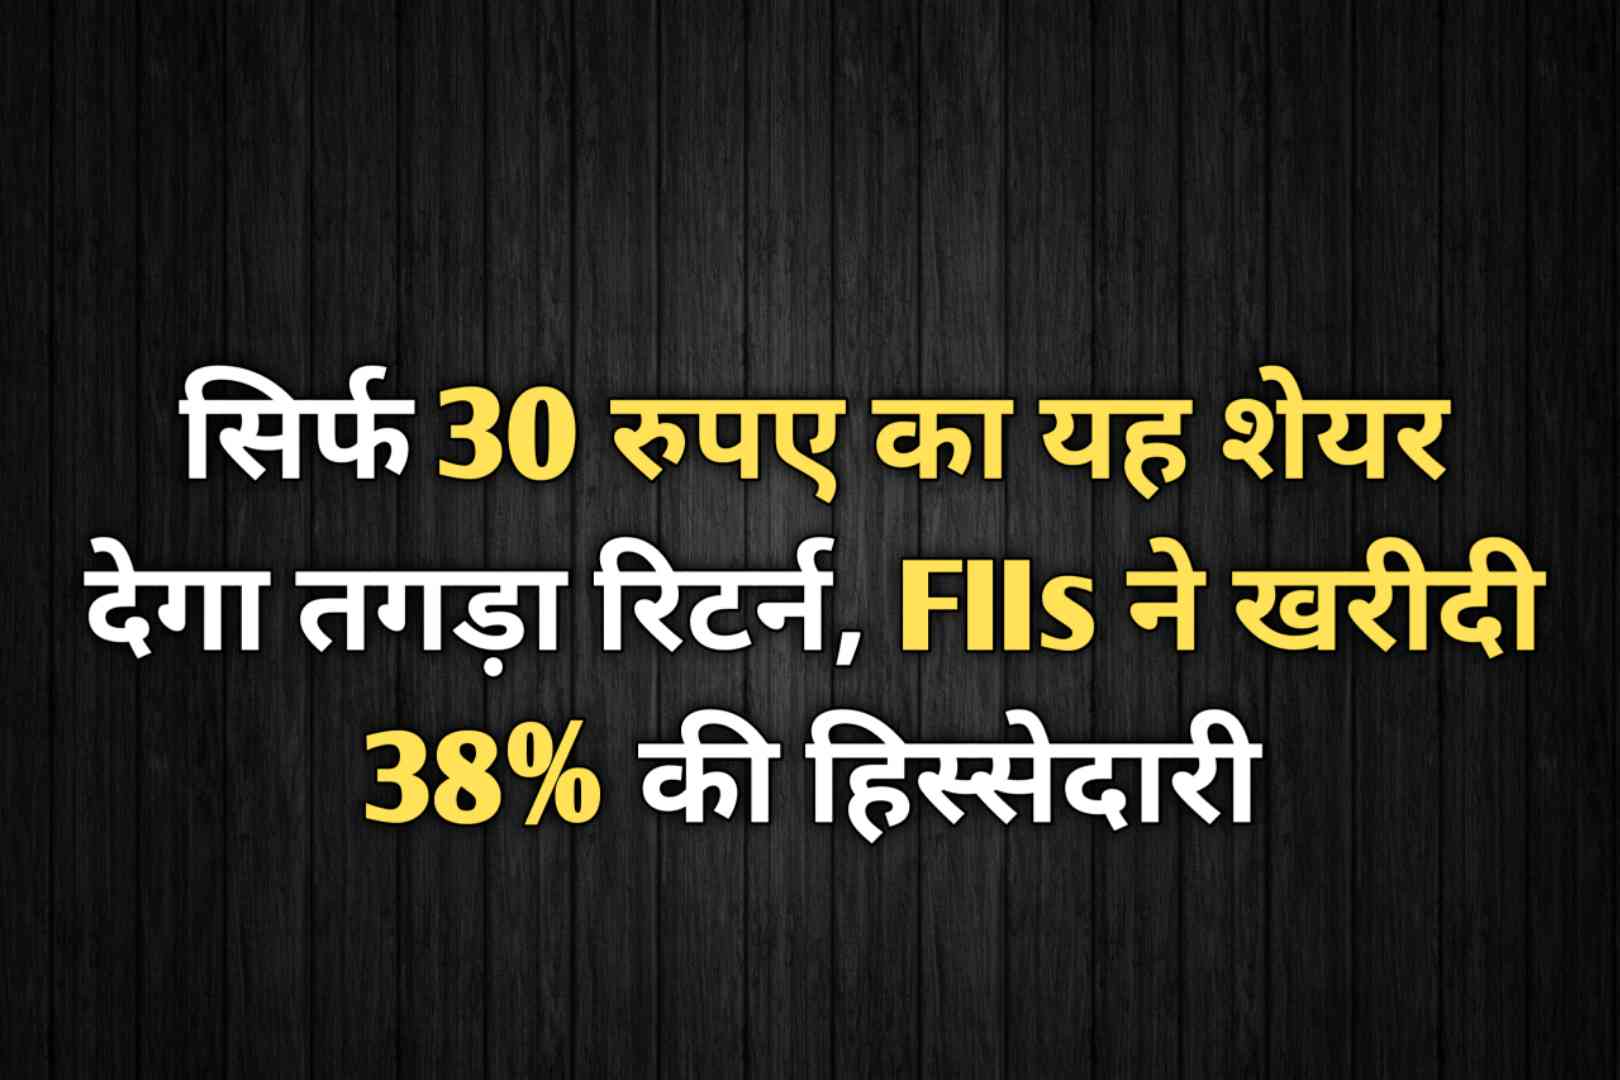 सिर्फ 30 रुपए का यह शेयर देगा तगड़ा रिटर्न, FIIs ने खरीदी 38% की हिस्सेदारी